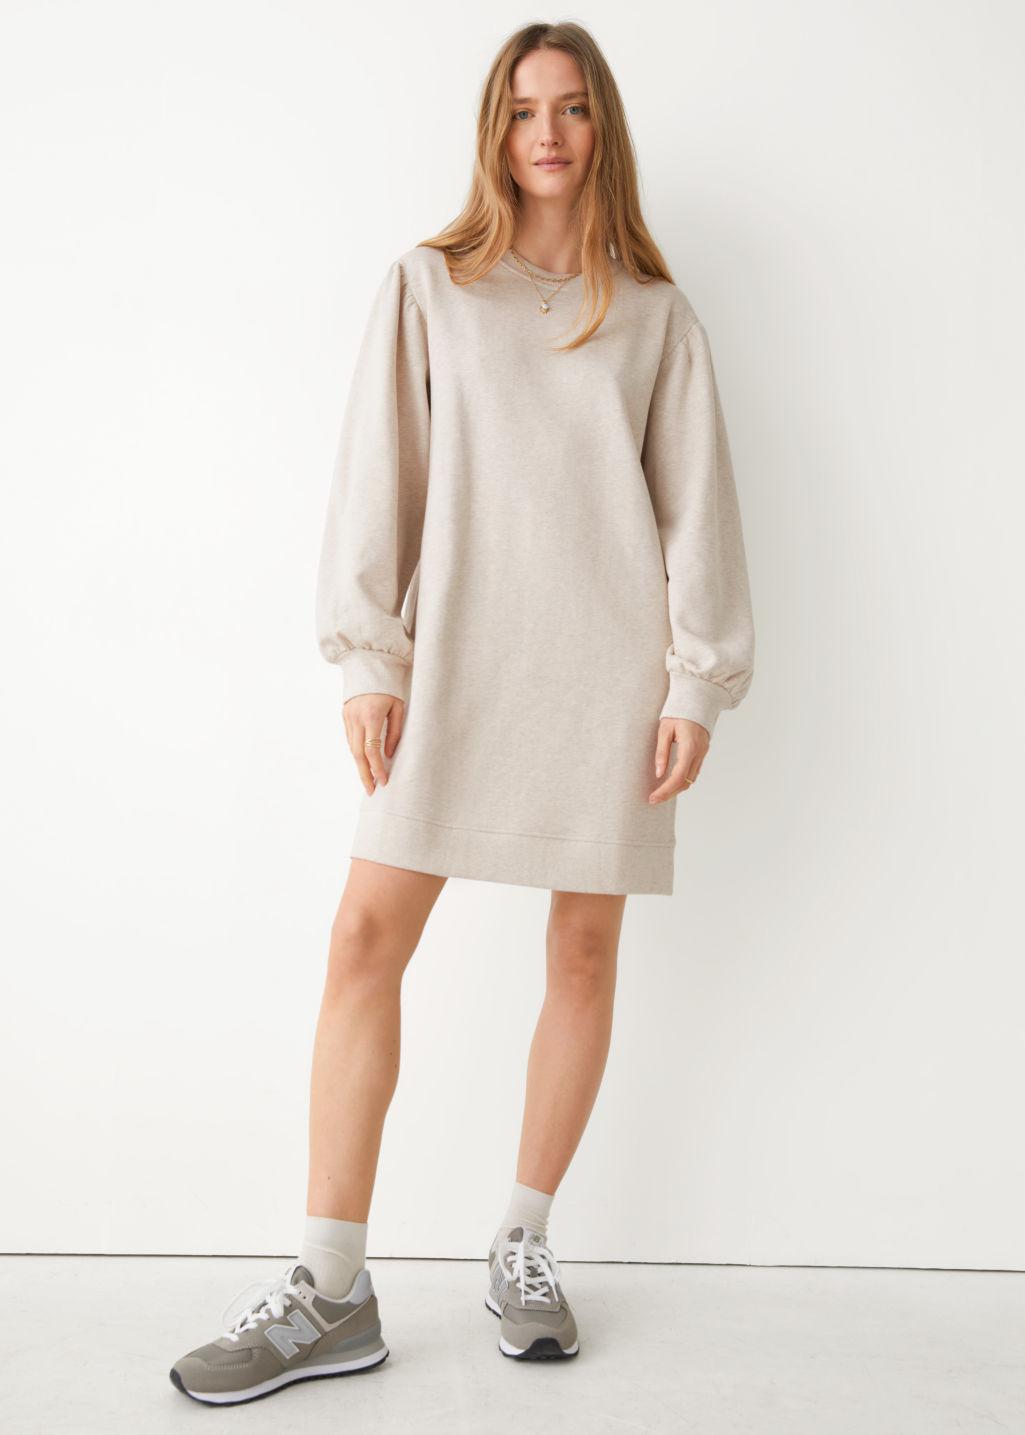 Relaxed Sweatshirt Mini Dress in Beige ...